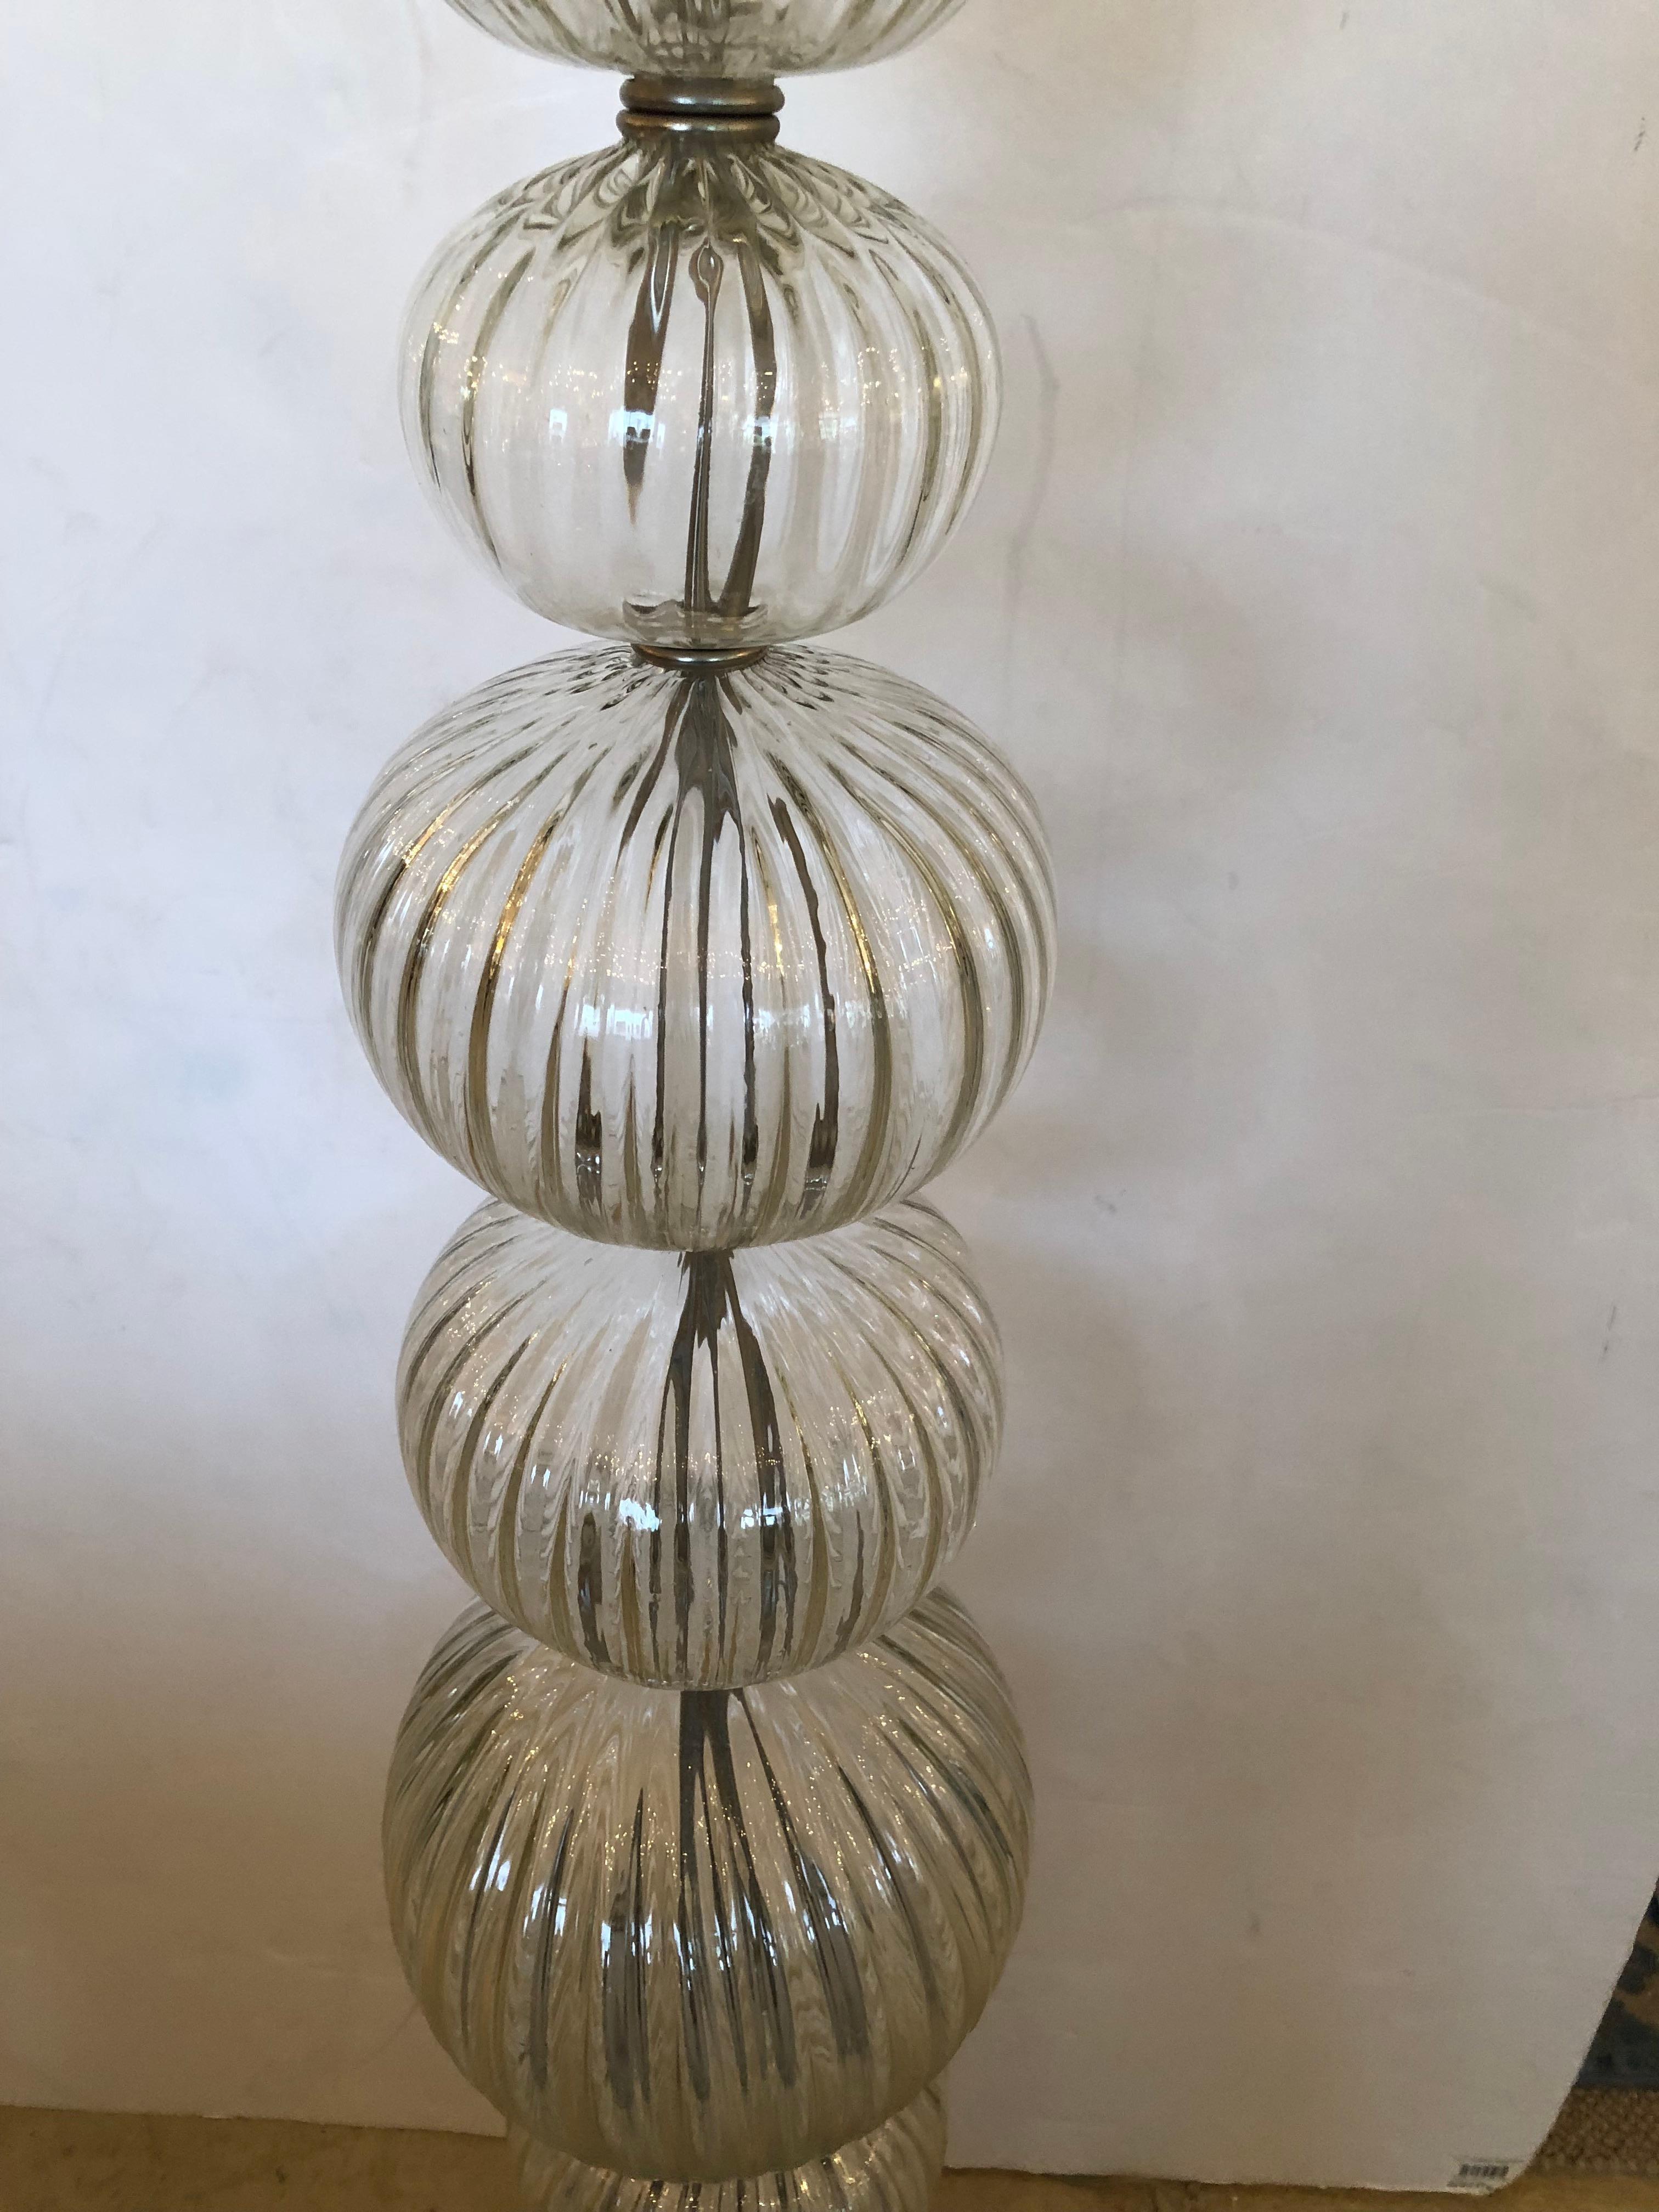 Elegante Stehleuchte aus transparentem Murano-Glas mit einer Säule aus gestapelten gerippten runden Kugeln mit Stahl dazwischen und einem runden Stahlsockel.  Schöner flammenförmiger Abschluss aus Bronze an der Spitze.
Die Beschattung ist